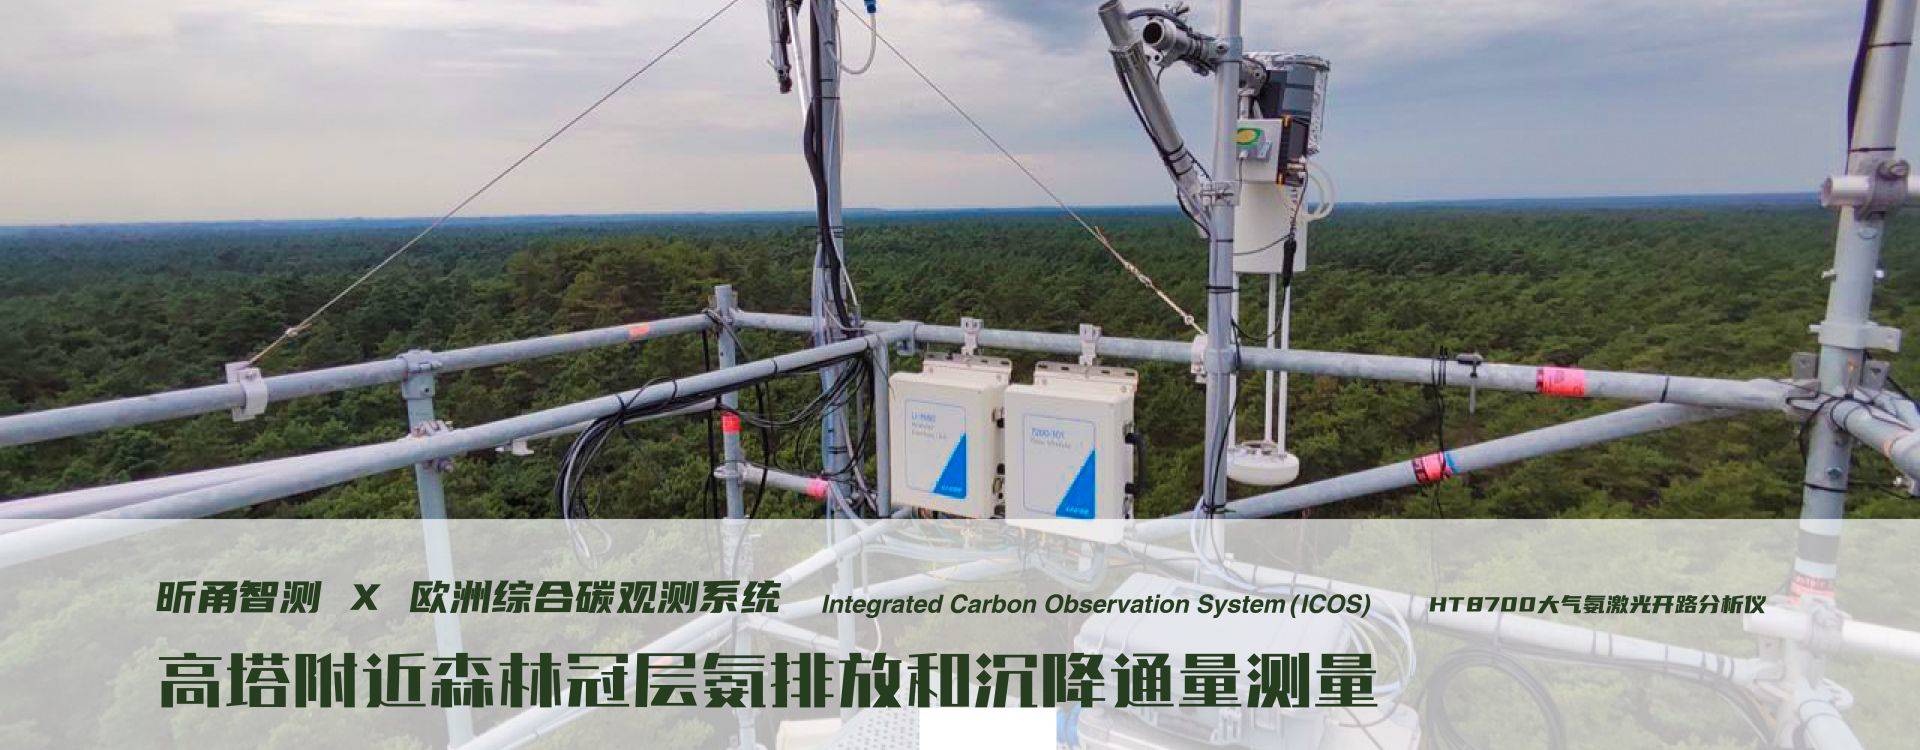 应用案例：欧洲ICOS集成碳观测系统森林站点项目